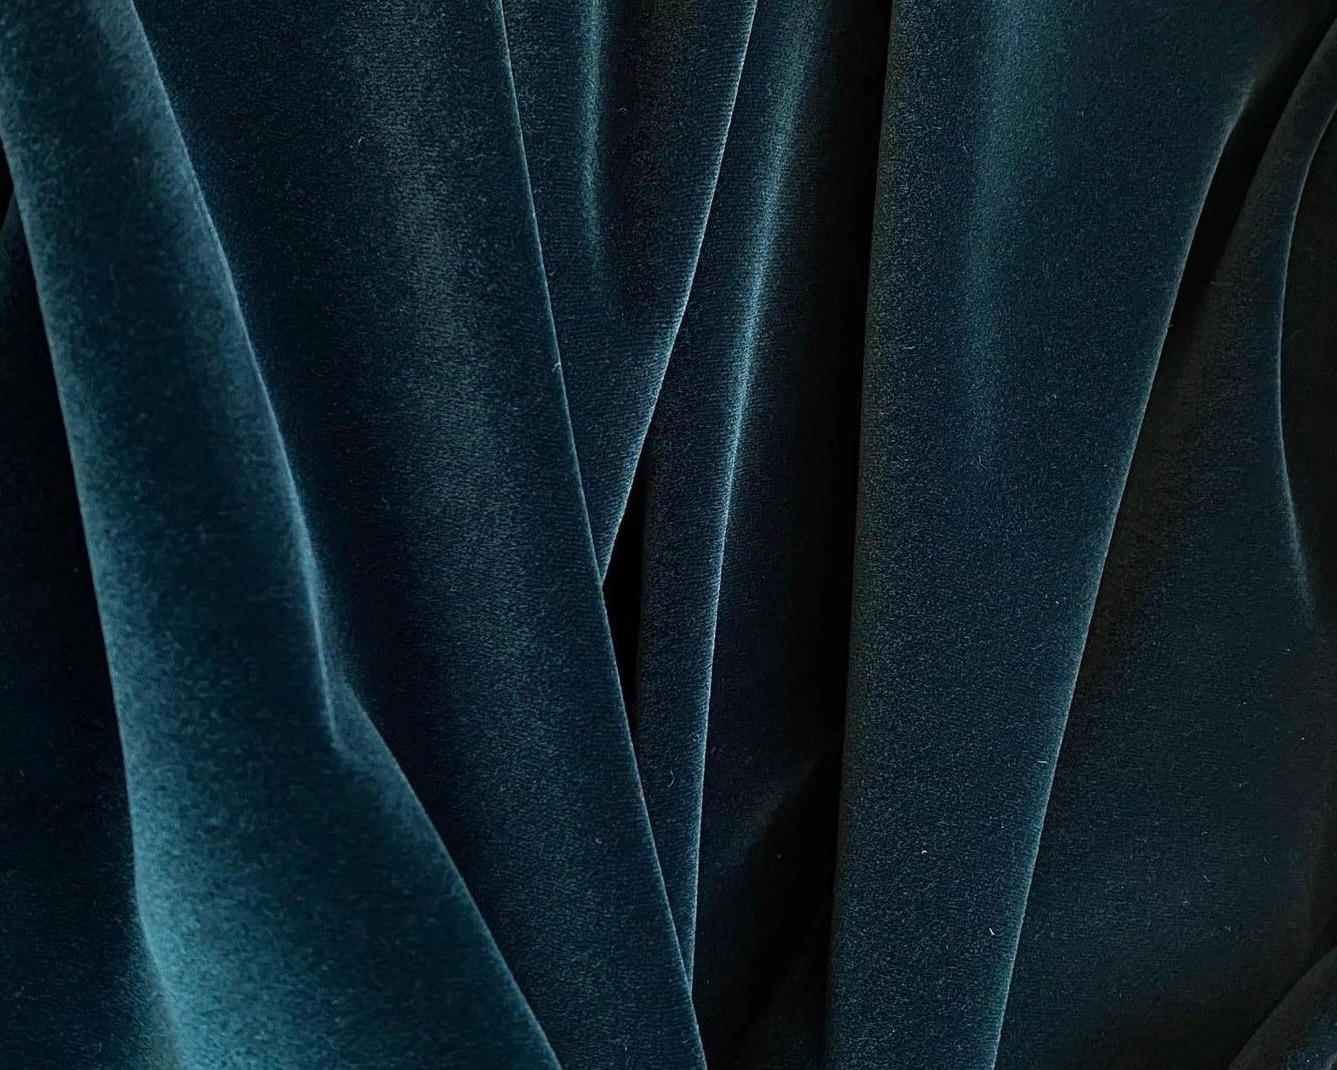 Глубокий насыщенный цвет, мягкая бархатистая текстура — Черному Водяному Кролику такое сочетание точно придется по душе